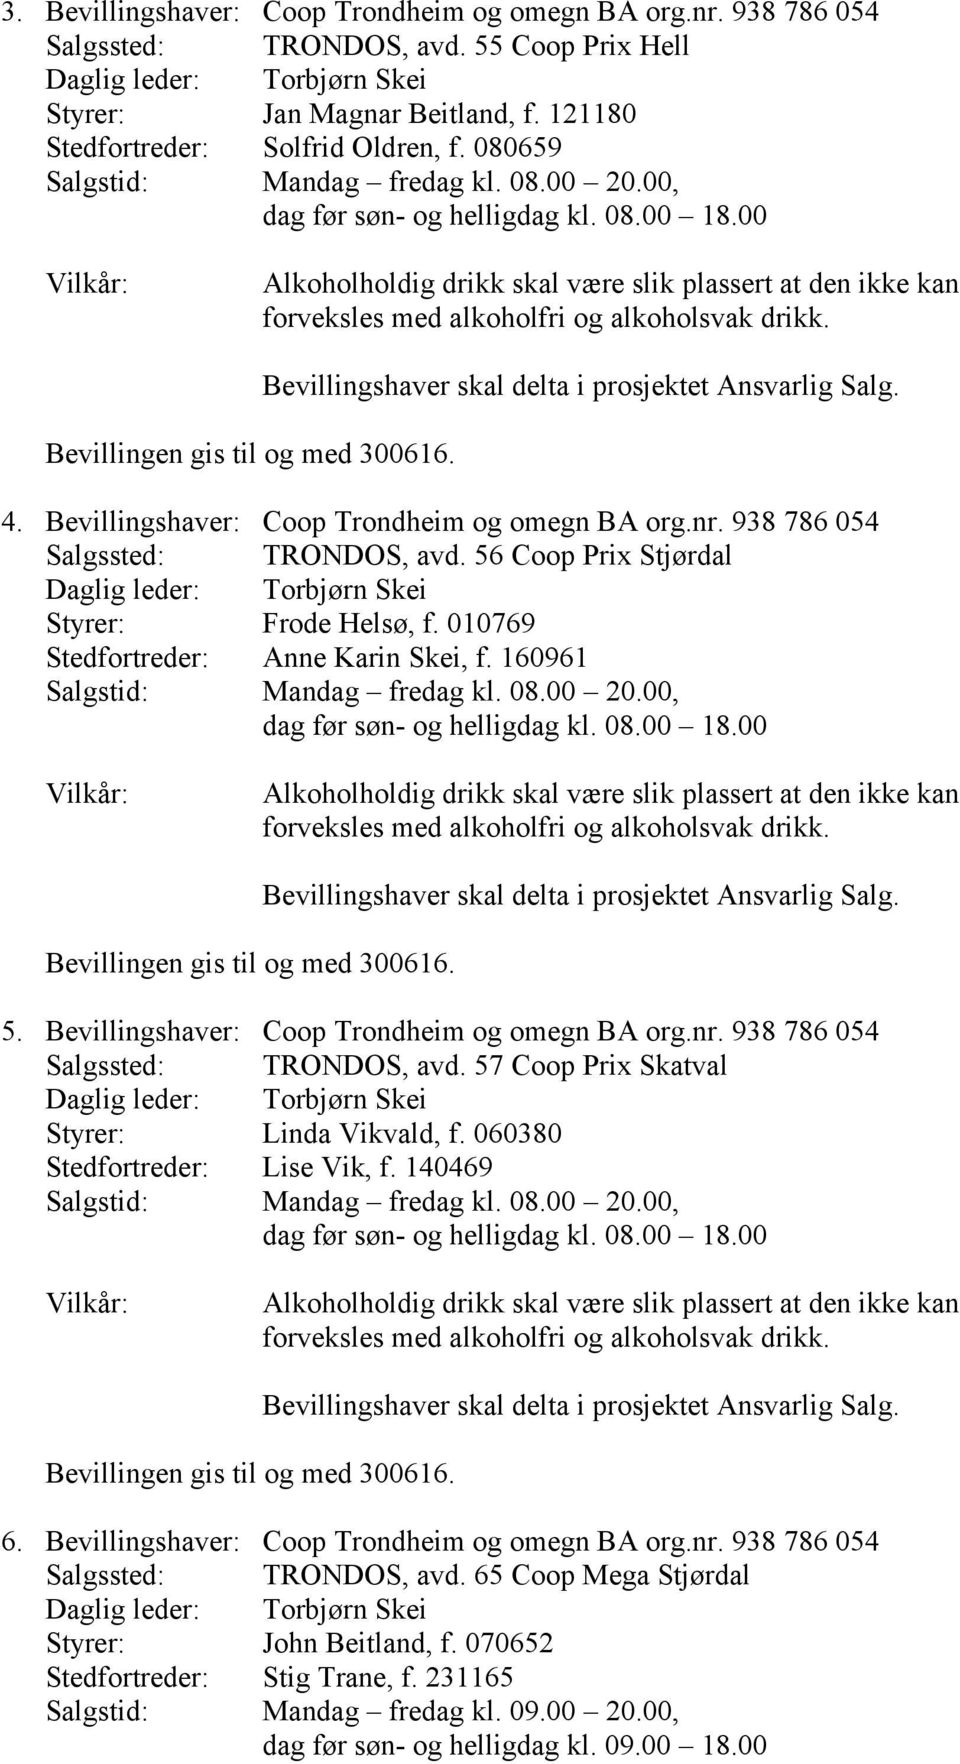 Bevillingshaver: Coop Trondheim og omegn BA org.nr. 938 786 054 Salgssted: TRONDOS, avd. 57 Coop Prix Skatval Styrer: Linda Vikvald, f. 060380 Stedfortreder: Lise Vik, f. 140469 6.